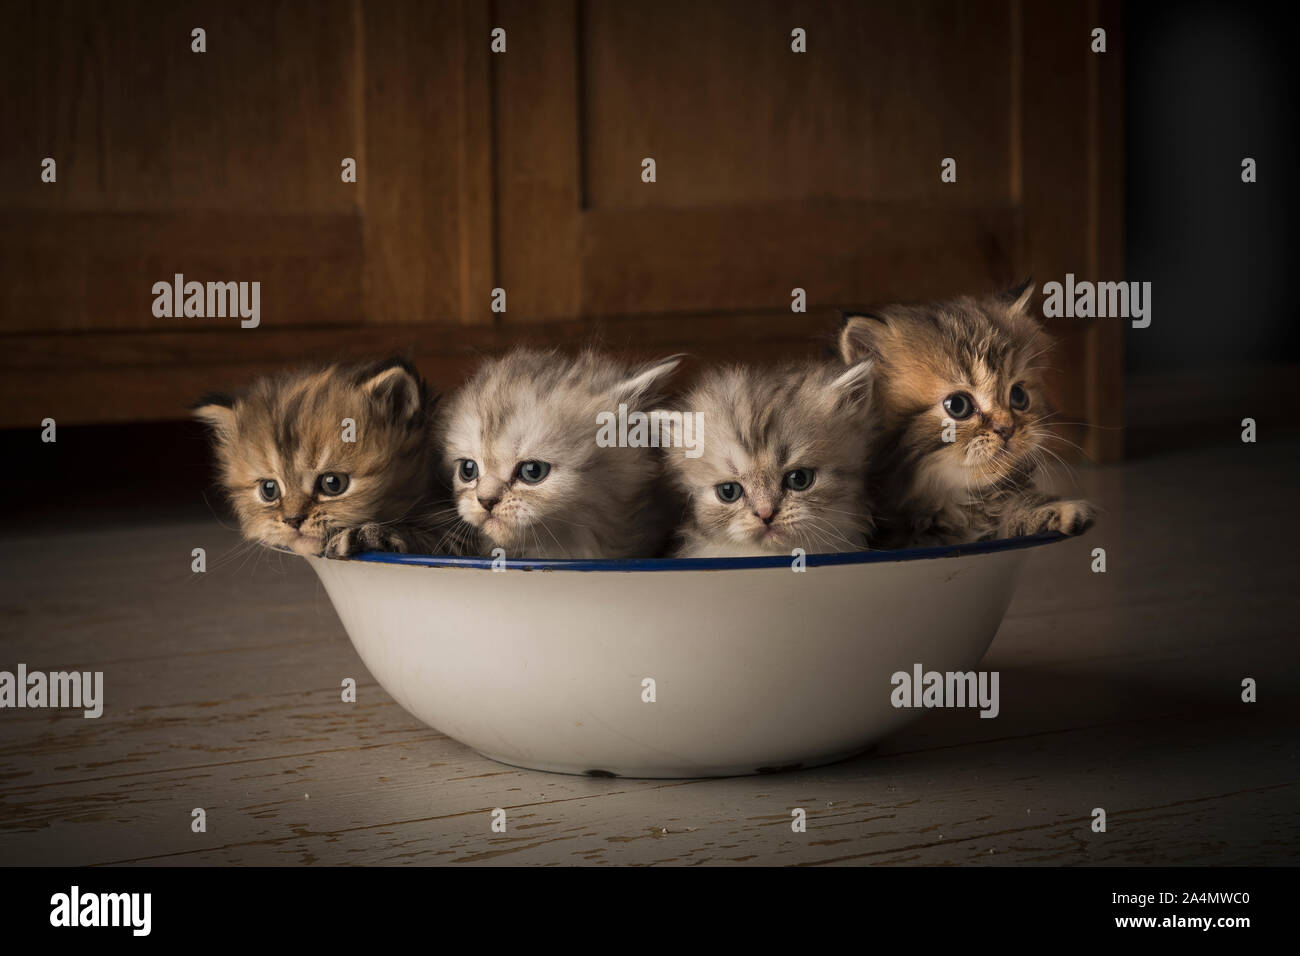 Kitten in washing bowl Stock Photo